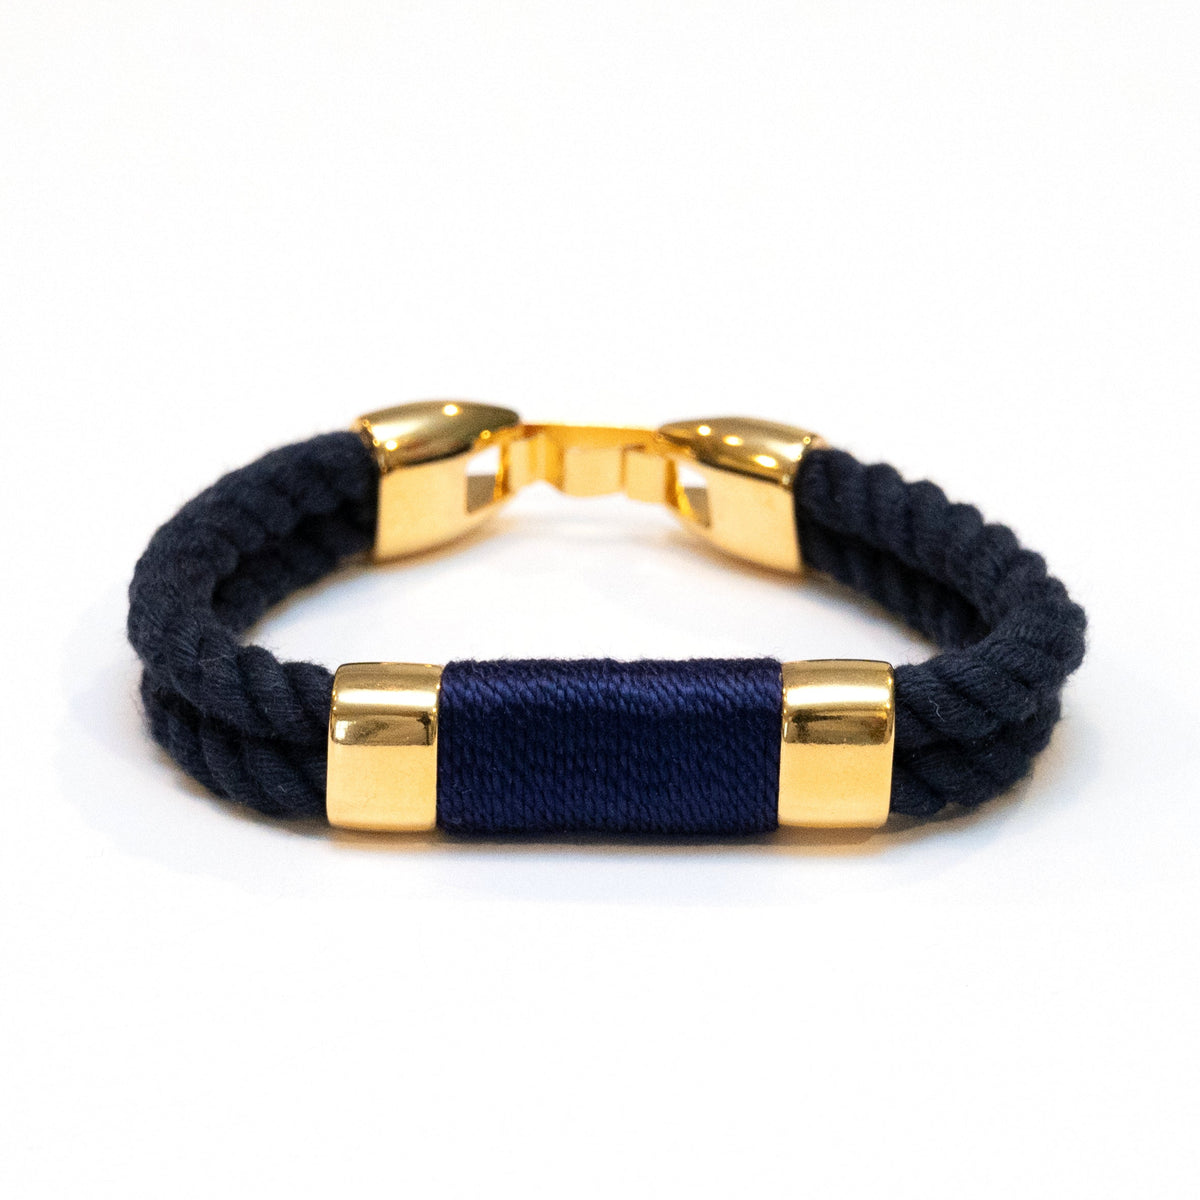 Tremont - Navy/Navy/Gold